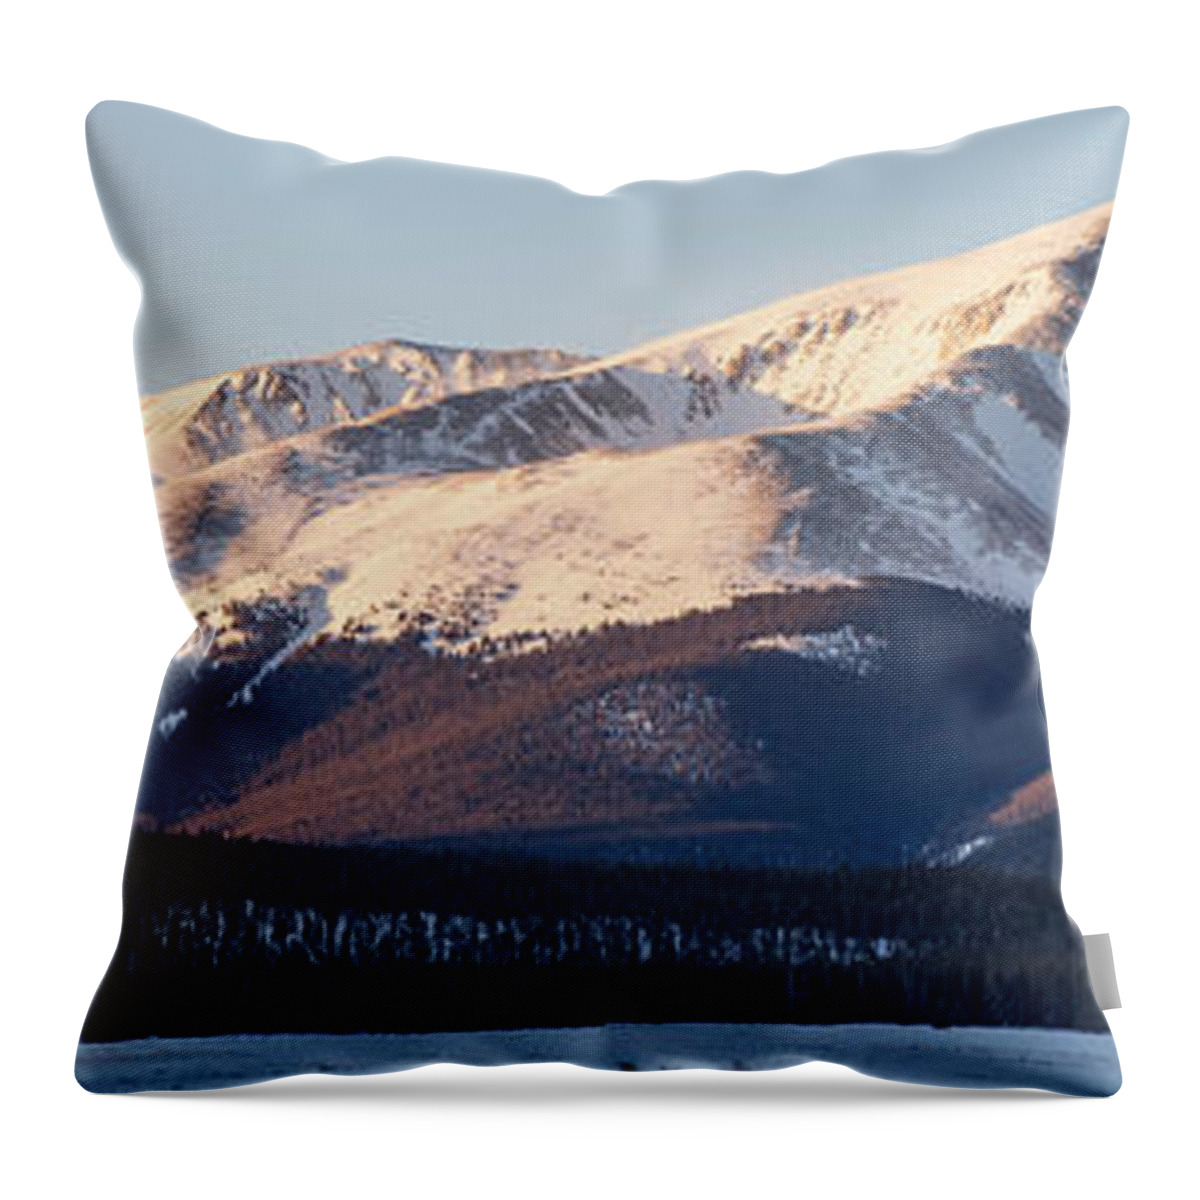 Mt. Elbert Throw Pillow featuring the photograph Mt. Elbert by Aaron Spong